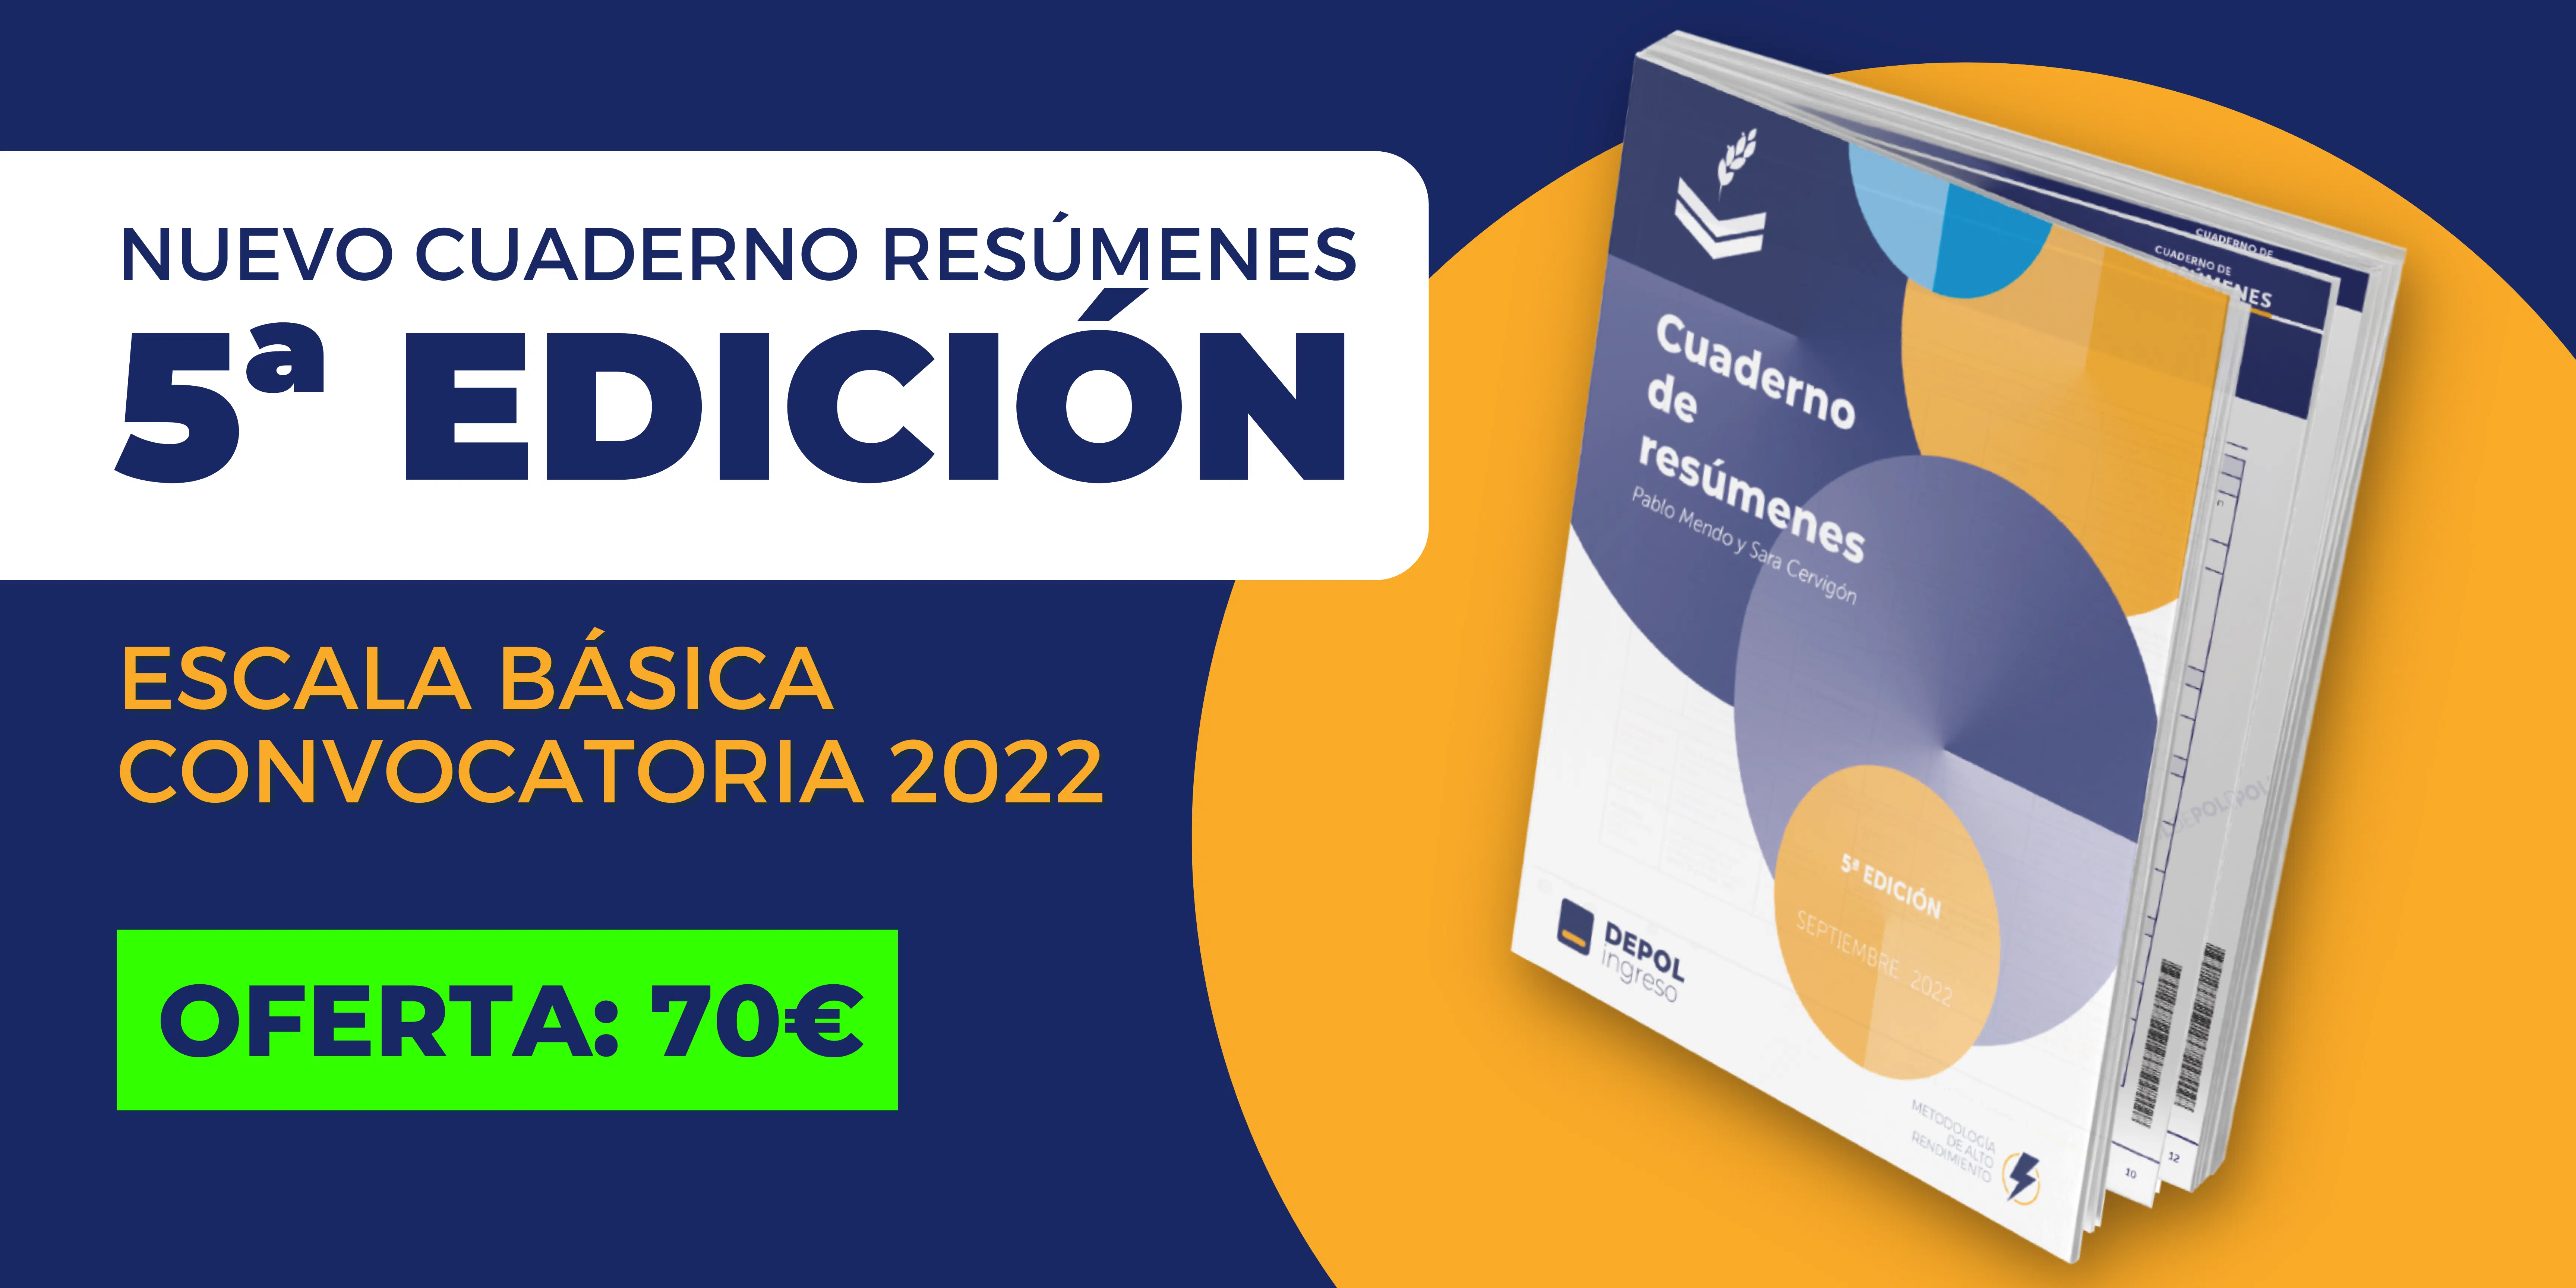 Nuevo Cuaderno de Resúmenes 2022 DEPOL